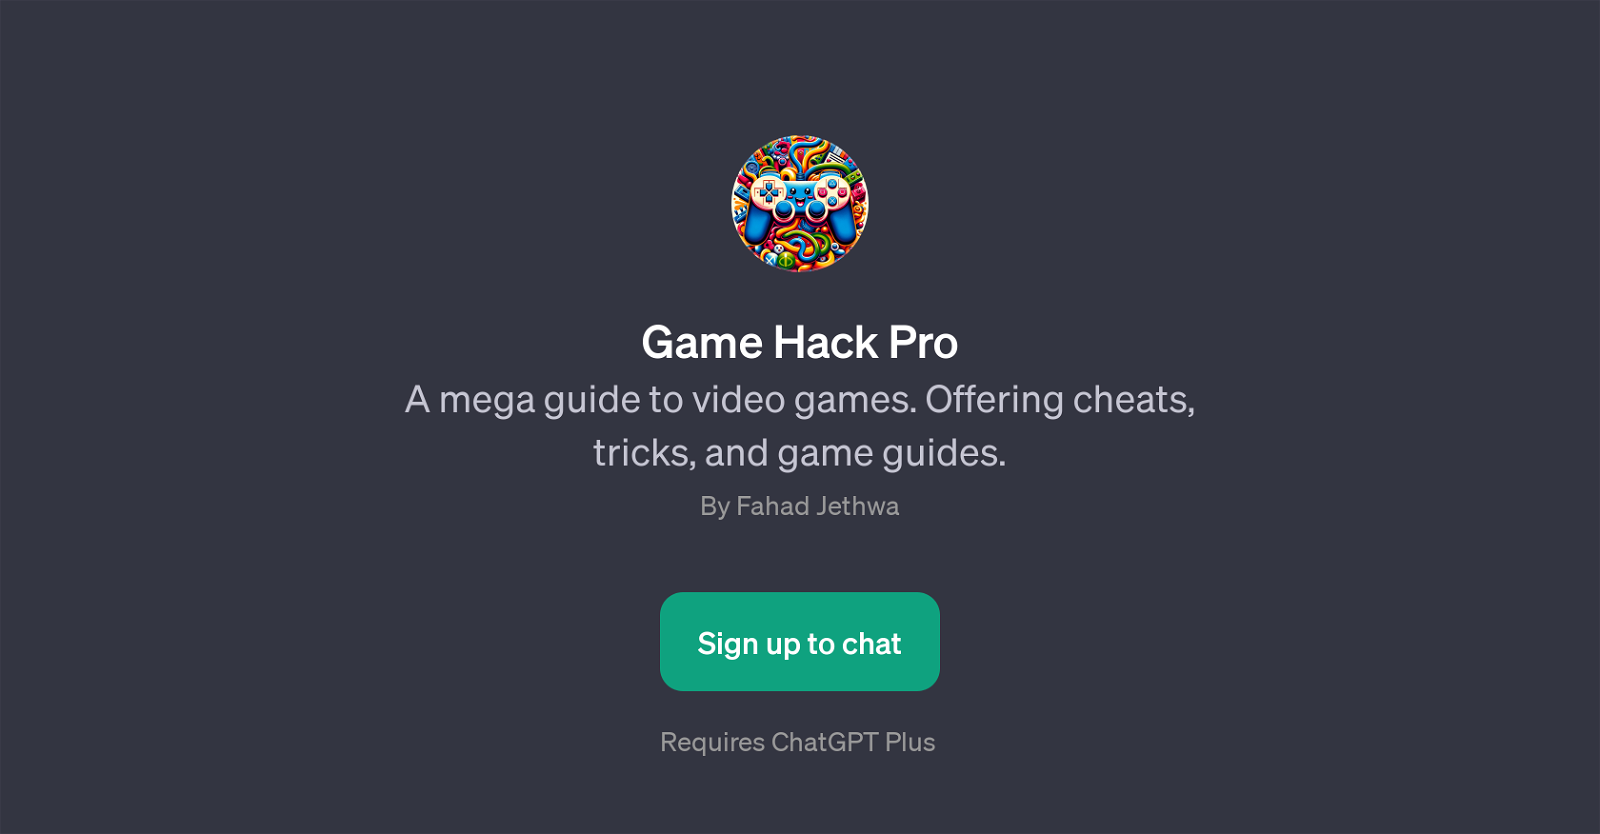 Game Hack Pro website